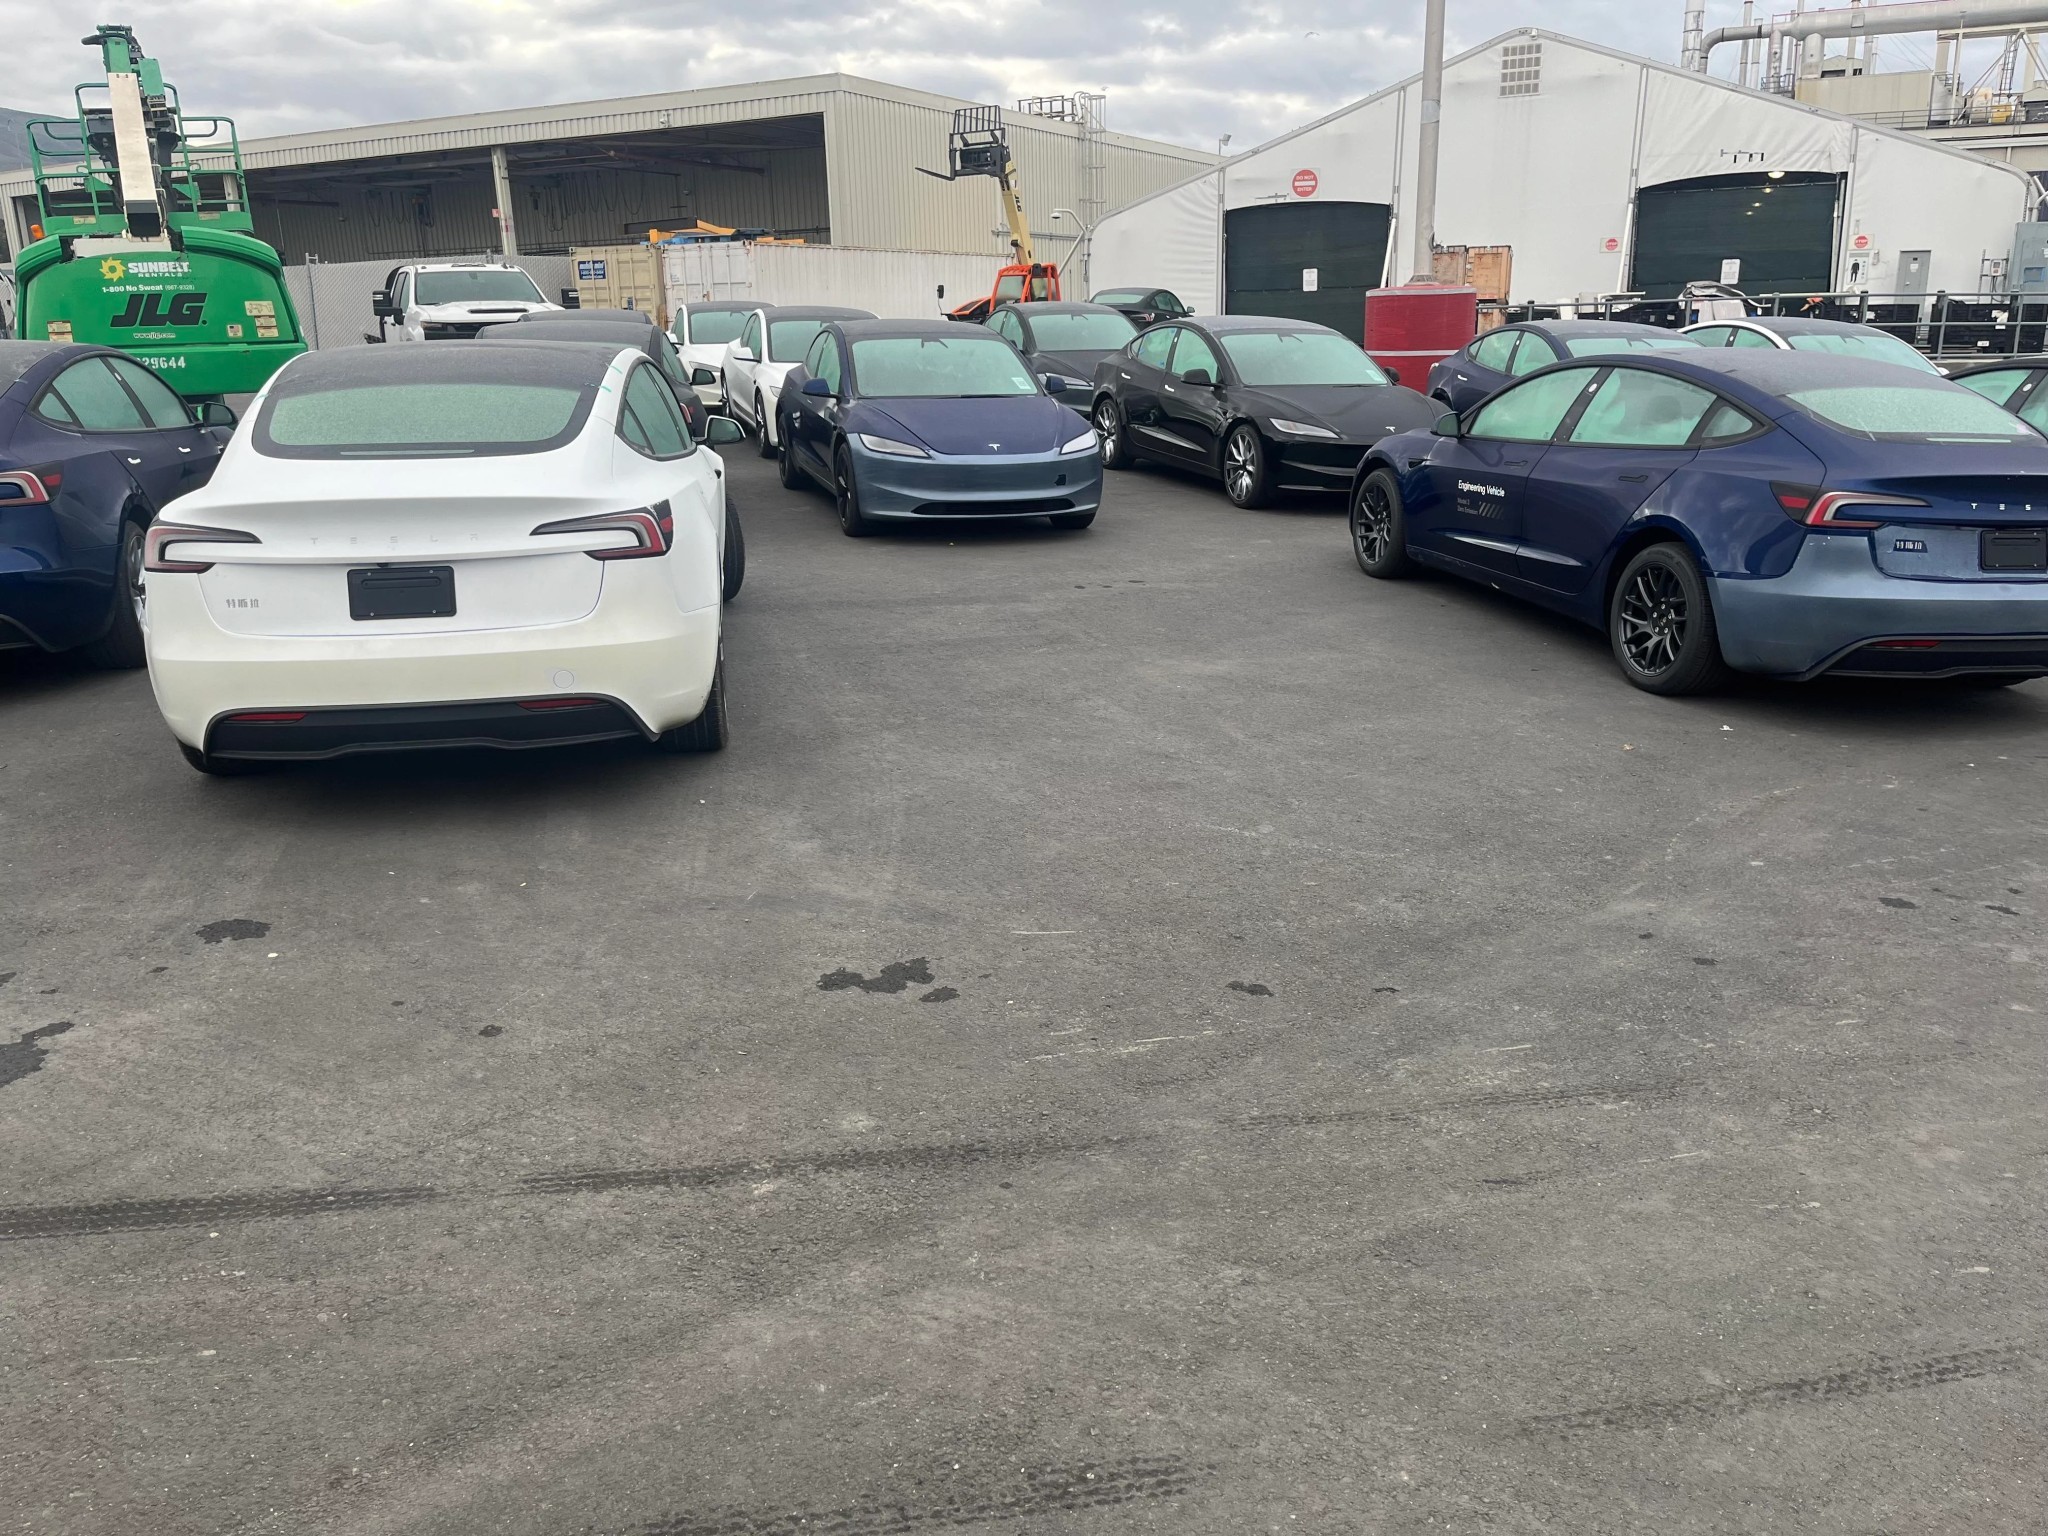 Tesla's Highland Model 3 pre-production starts in Fremont - ArenaEV